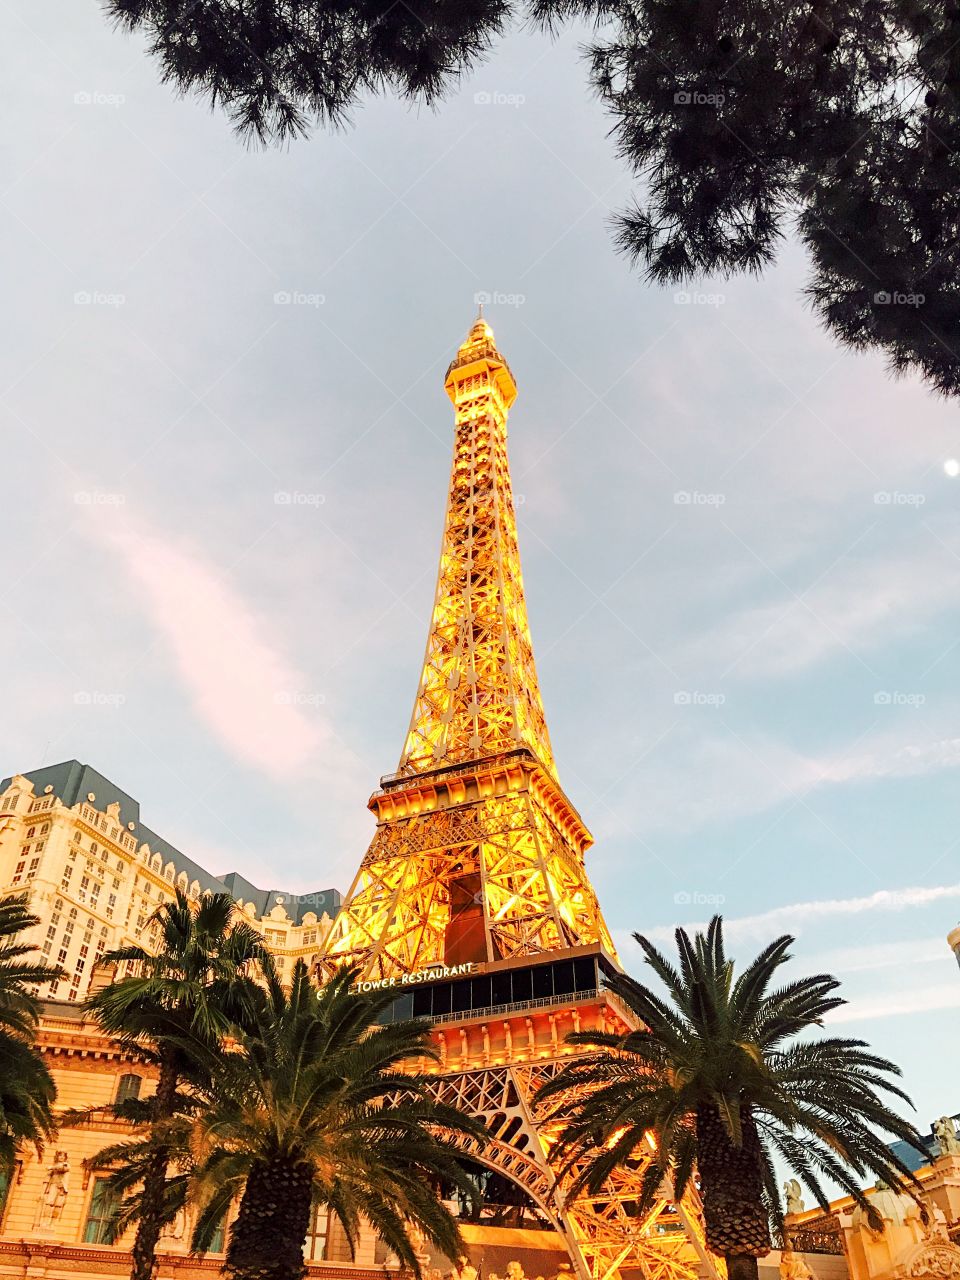 Paris in Vegas
